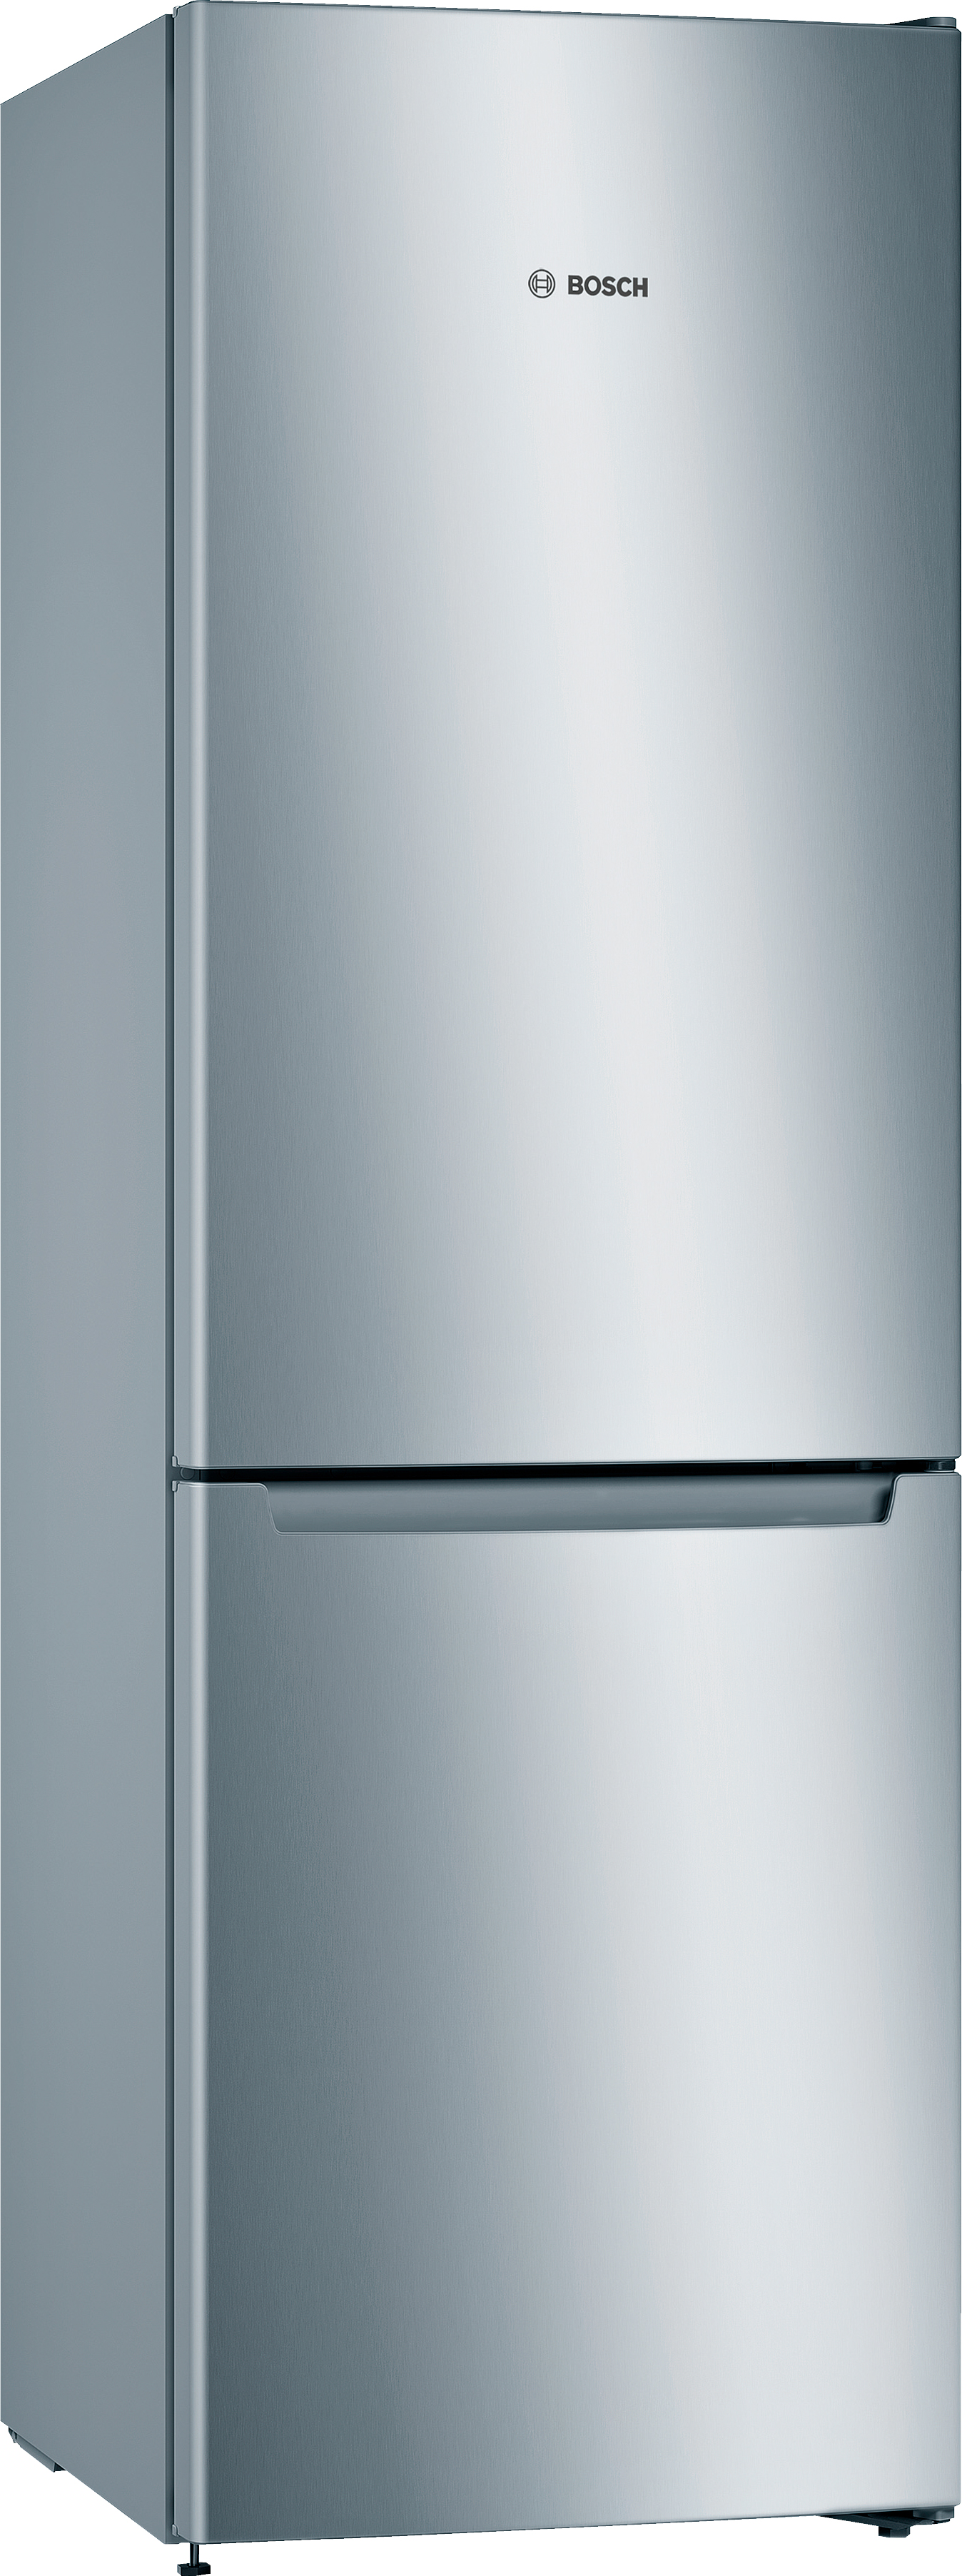 Купить холодильник Bosch KGN33NL206 в Киеве